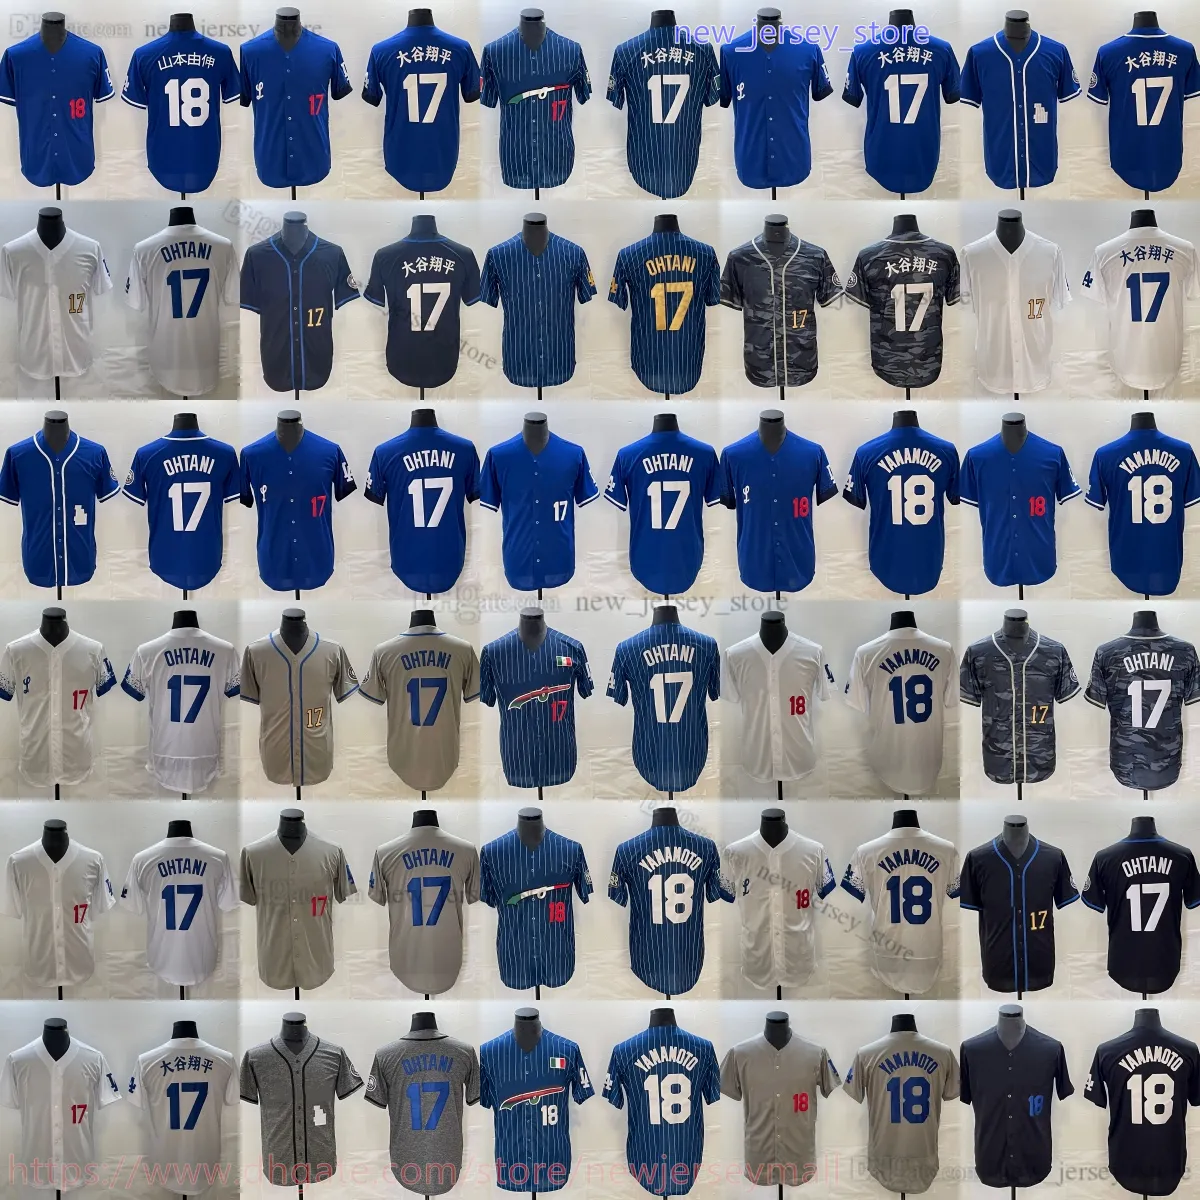 2024 لعبة البيسبول الجديدة 18 Yoshinobu Yamamoto Jersey Stitch Home Away 17 Shohei Ohtani Jerseys Blue White Gray Sports Shirt Man Women Youth Kids Boys XS-6XL